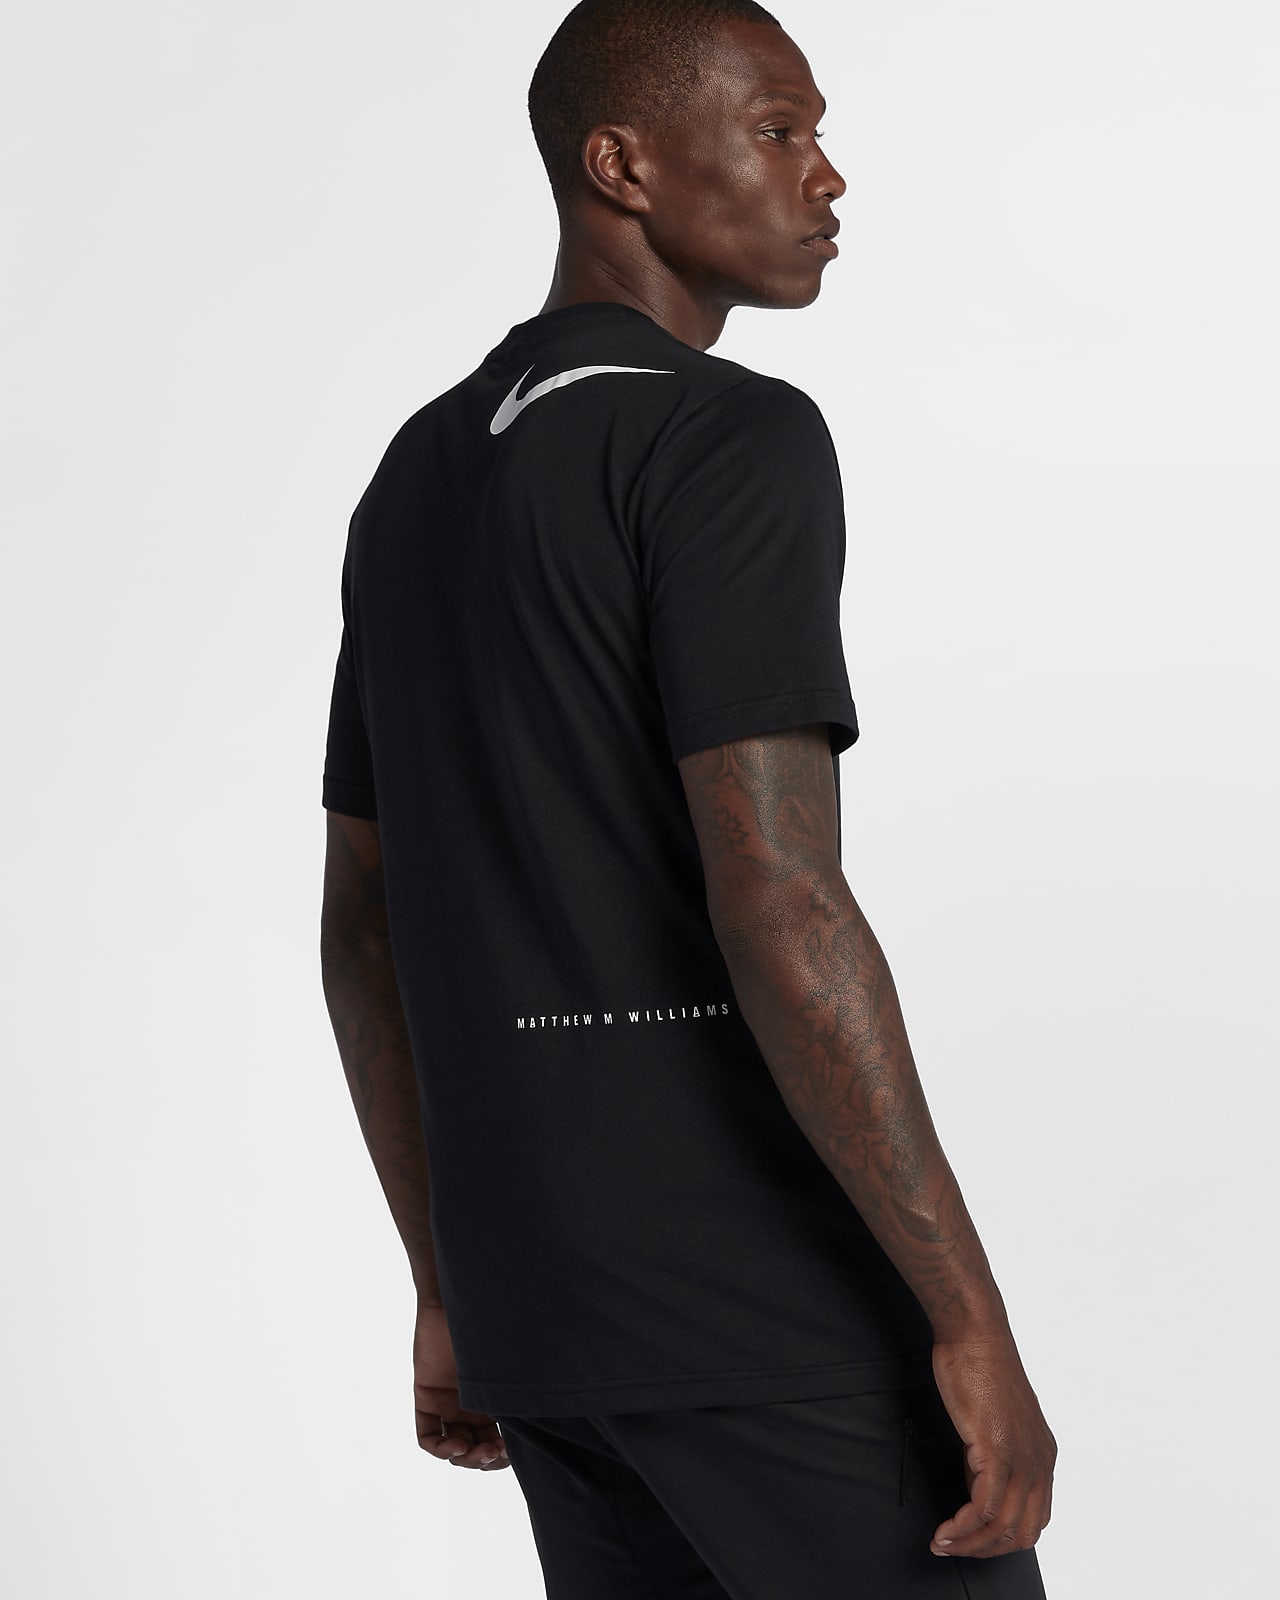 Nike x MMW Graphic 男子T恤